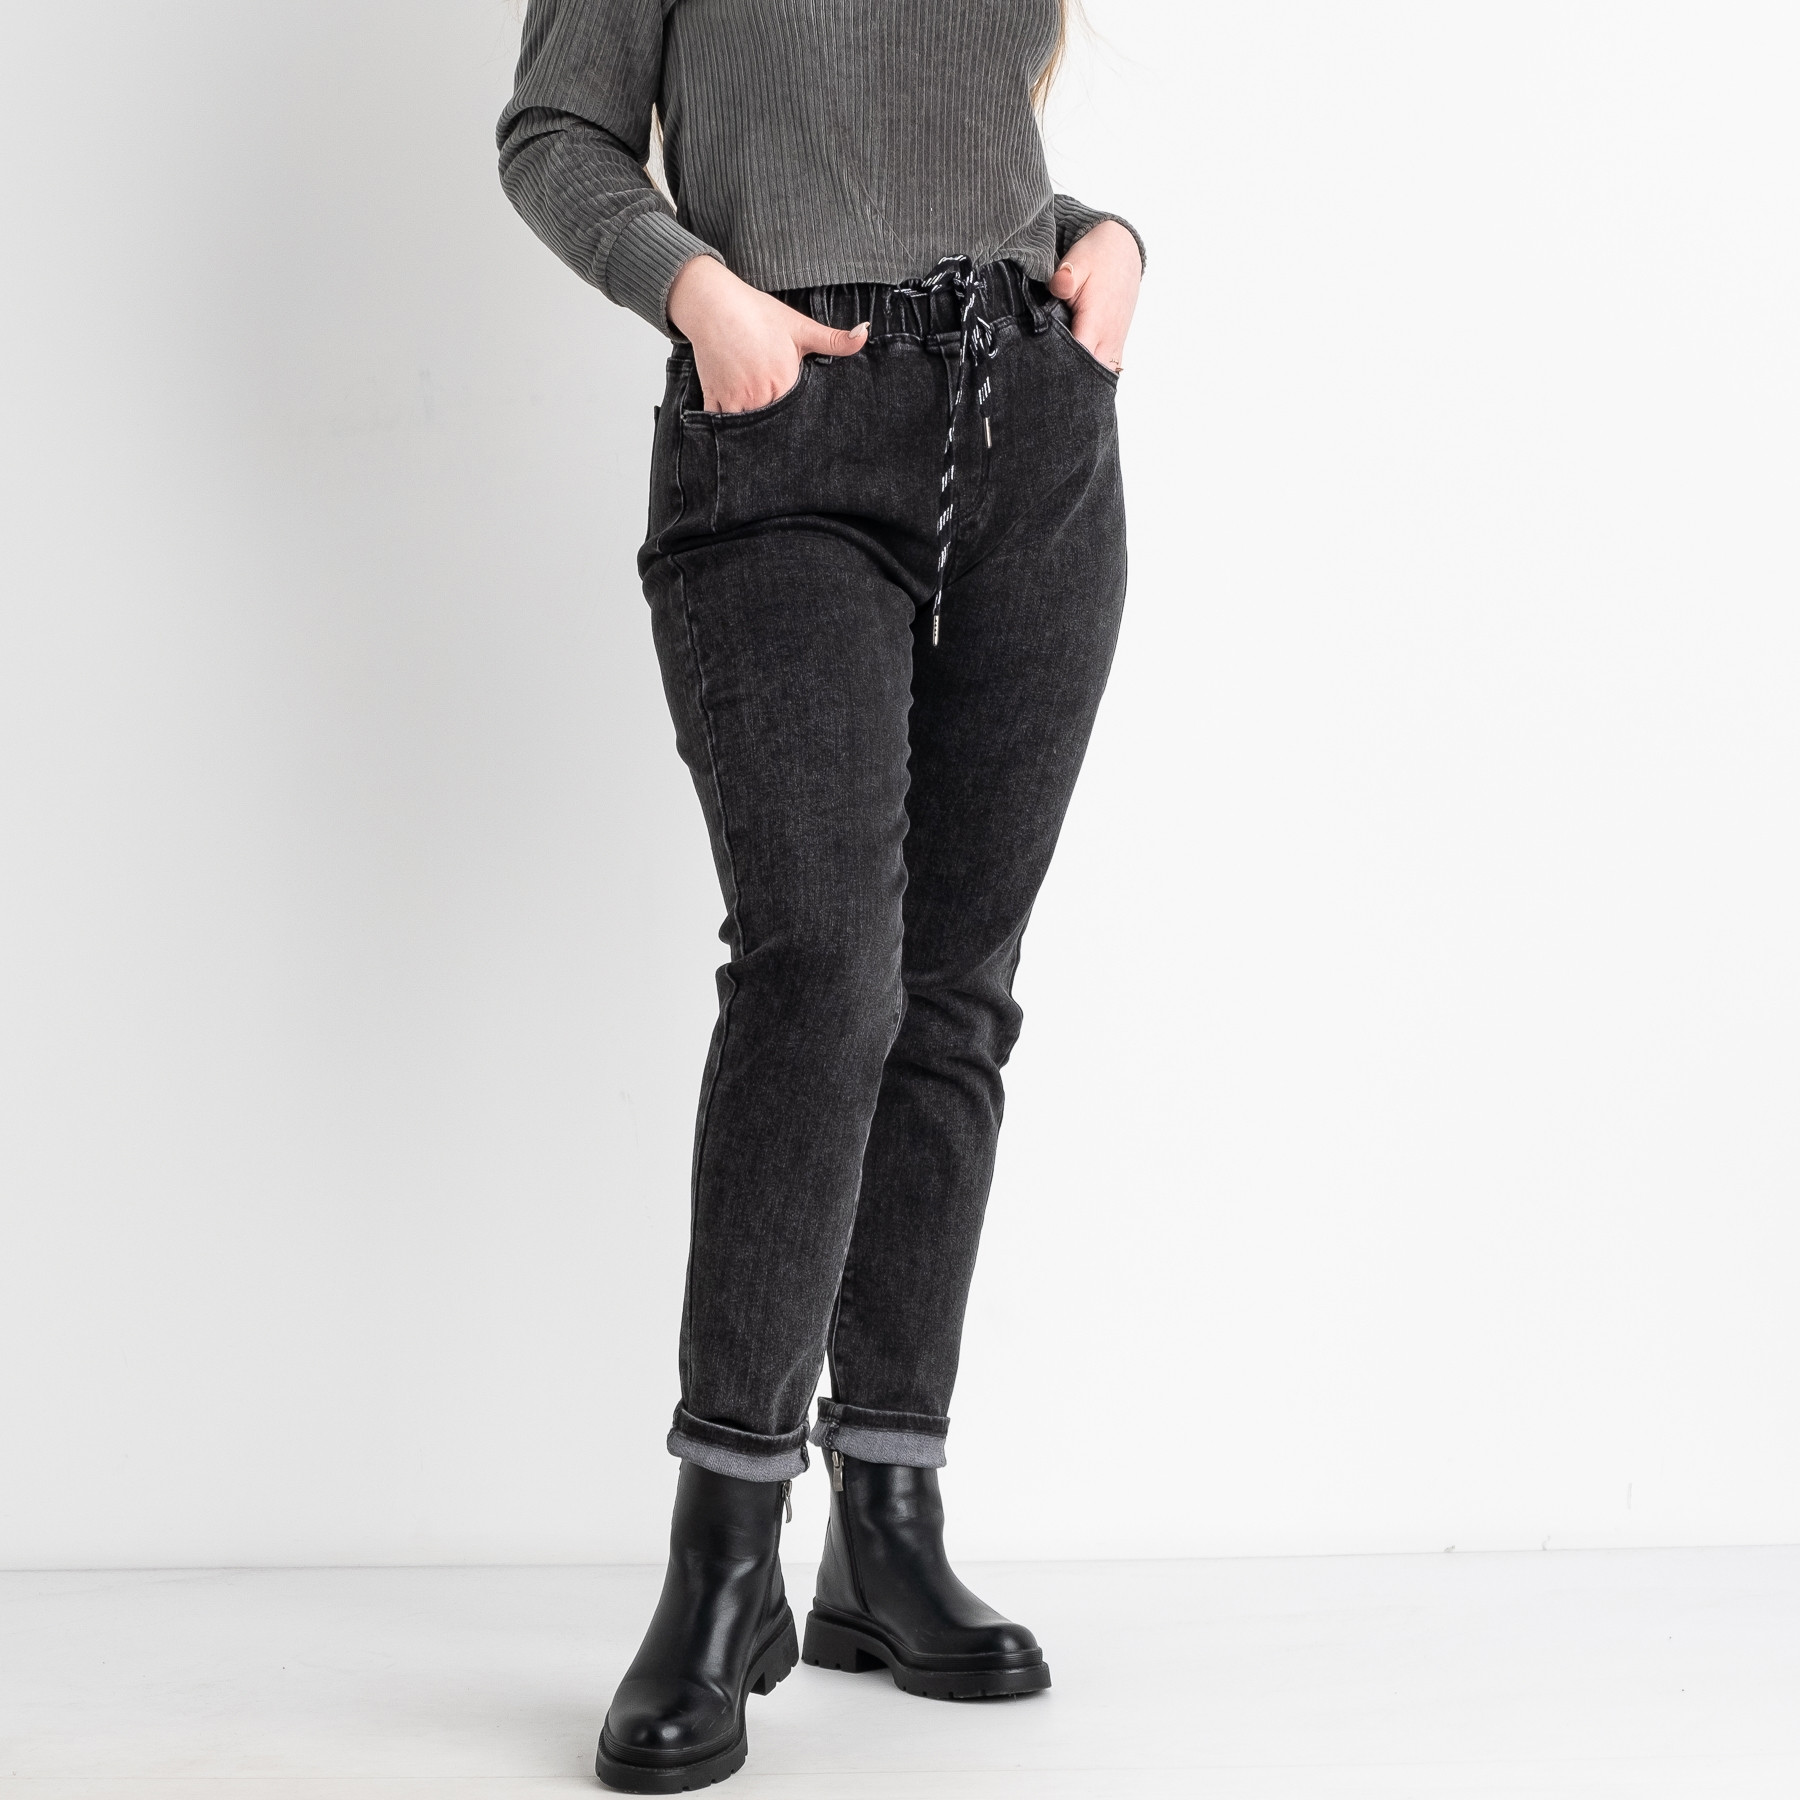 3141 KT.Moss джинсы полубатальные темно-серые стрейчевые (6 ед.размеры: 28.29.30.31.32.33)